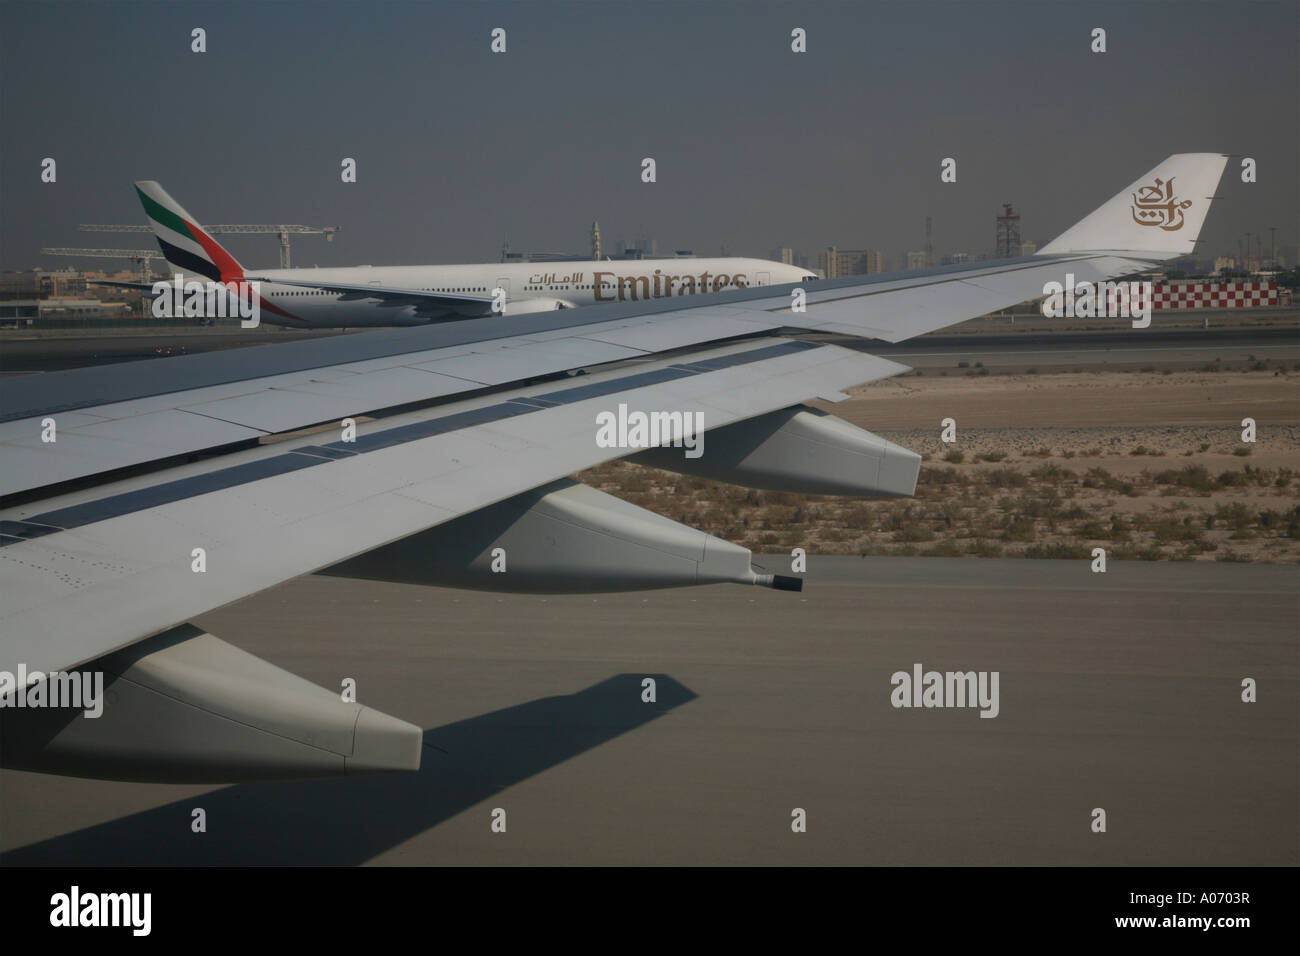 Emirates aereo sulla pista di rullaggio all'aeroporto internazionale di Dubai Emirati arabi uniti middel east Foto Stock